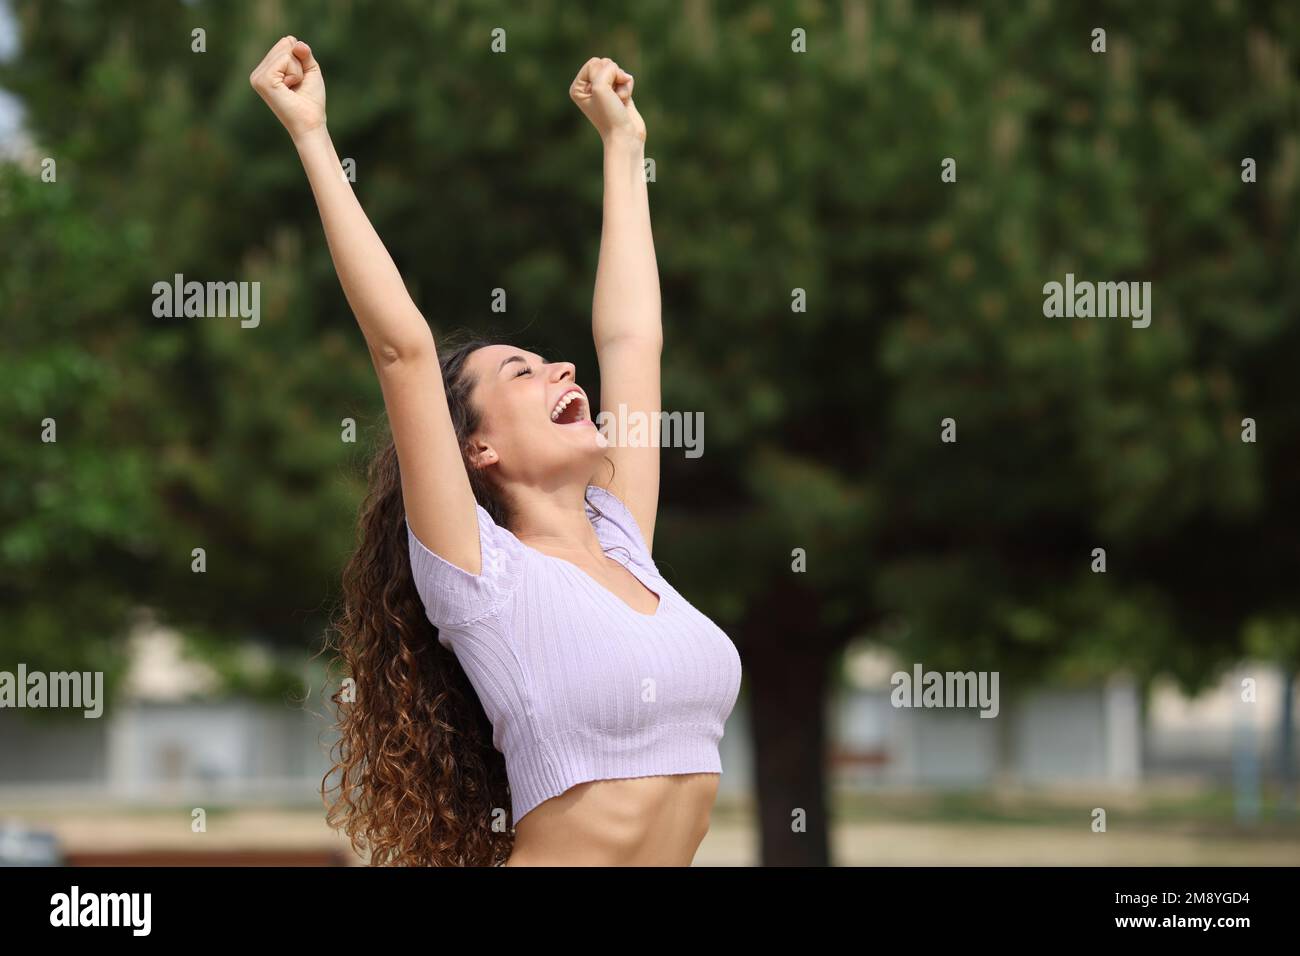 Aufgeregte Frau, die in einem Park die Arme erhebt, um den Erfolg zu feiern Stockfoto